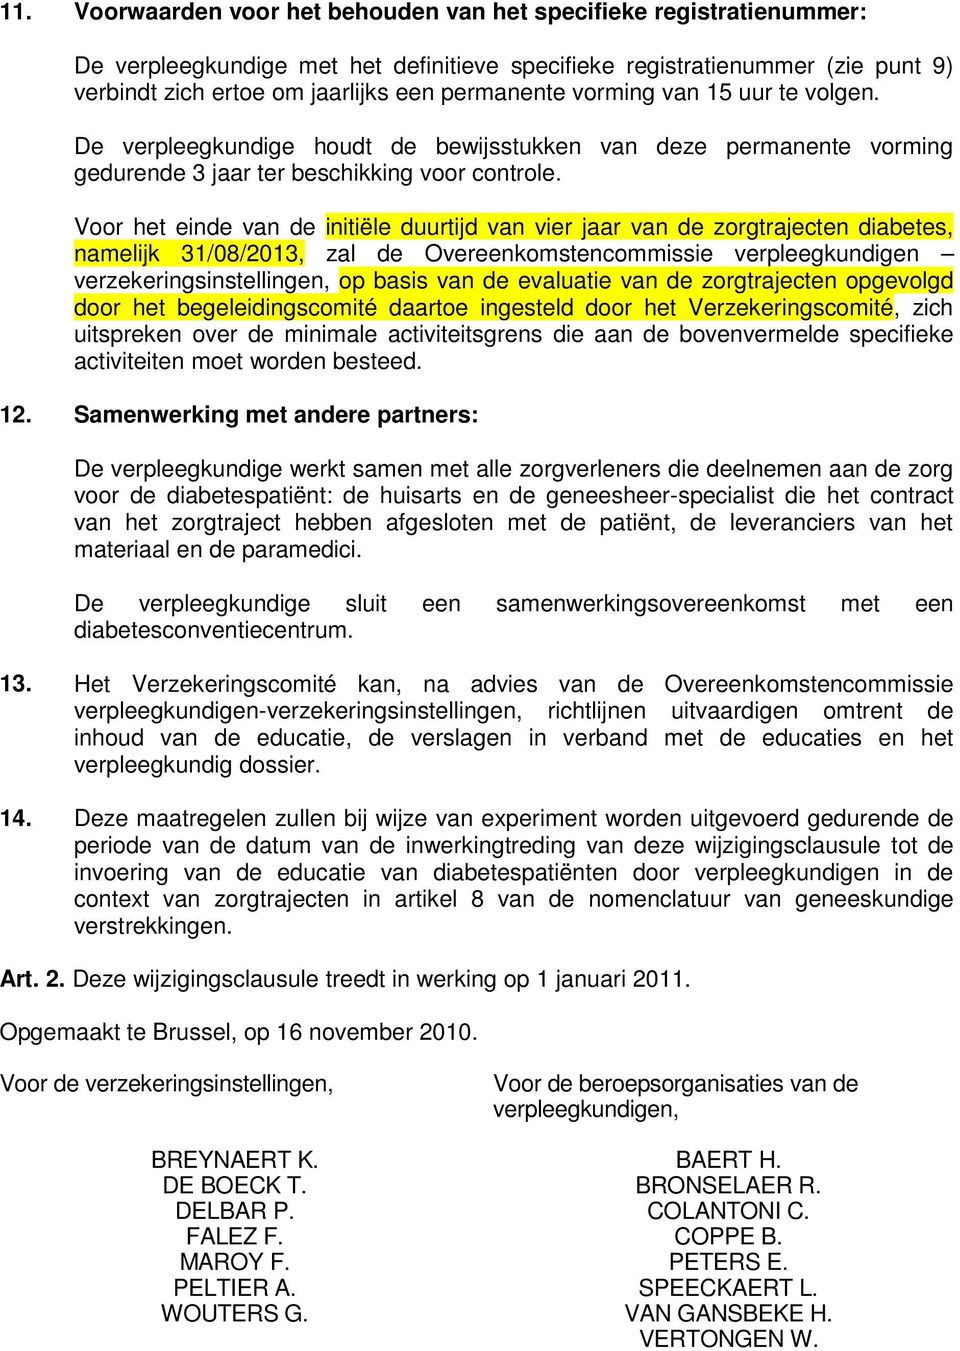 Voor het einde van de initiële duurtijd van vier jaar van de zorgtrajecten diabetes, namelijk 31/08/2013, zal de Overeenkomstencommissie verpleegkundigen verzekeringsinstellingen, op basis van de